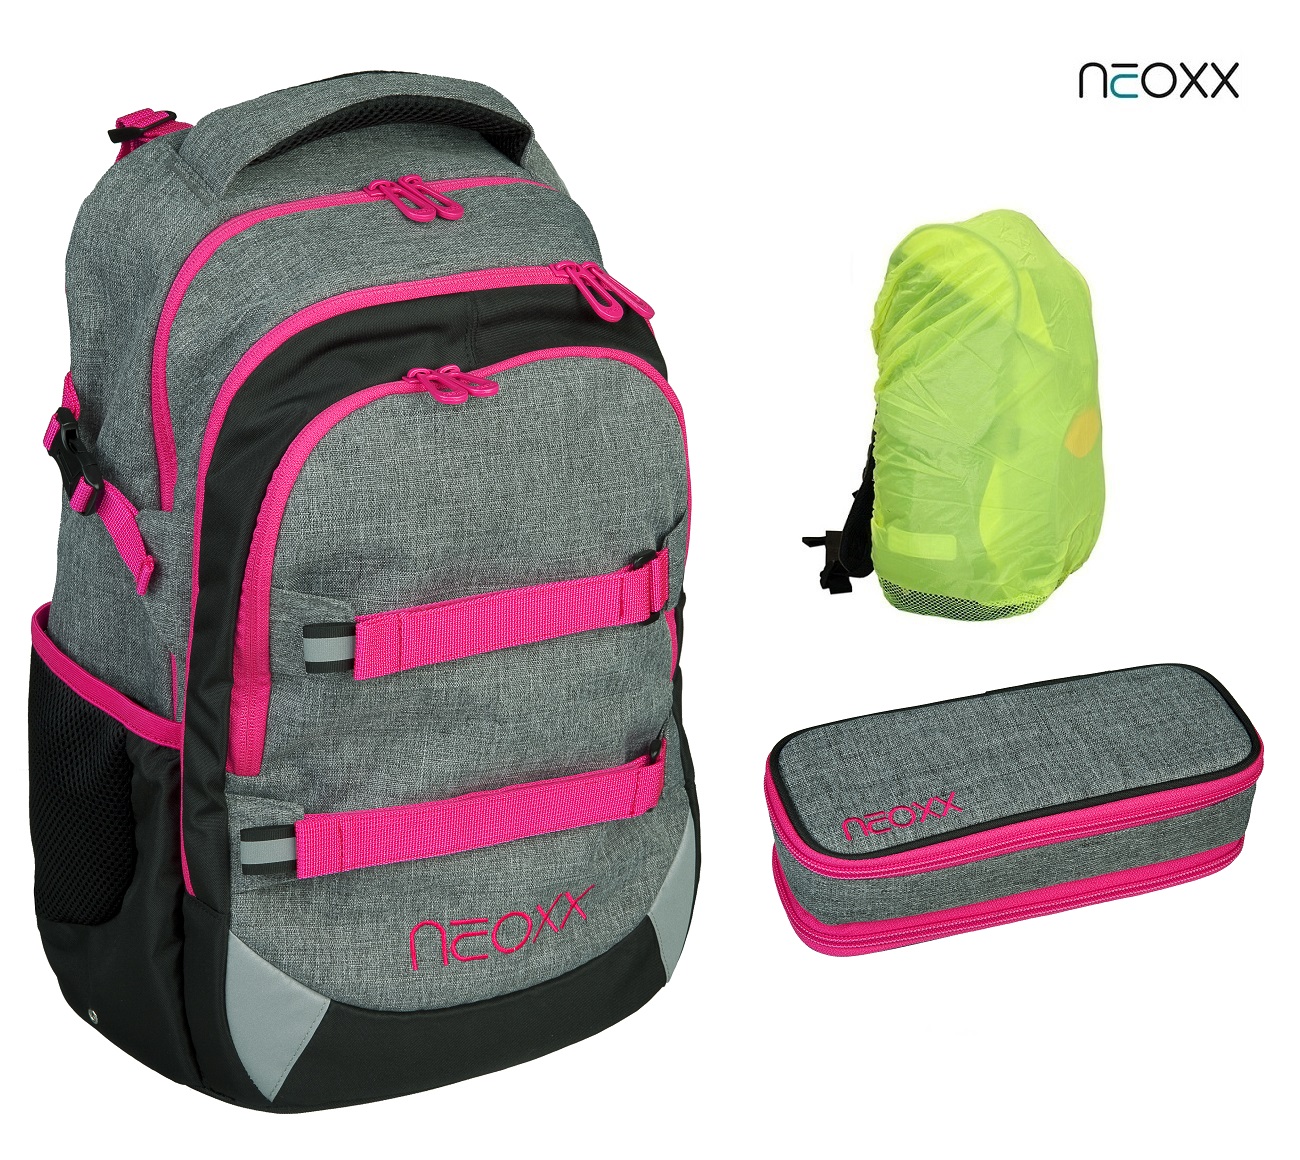 NEOXX Active Schulrucksack Set mit Camo Regenschutz Schlamperbox und 3tlg. nation